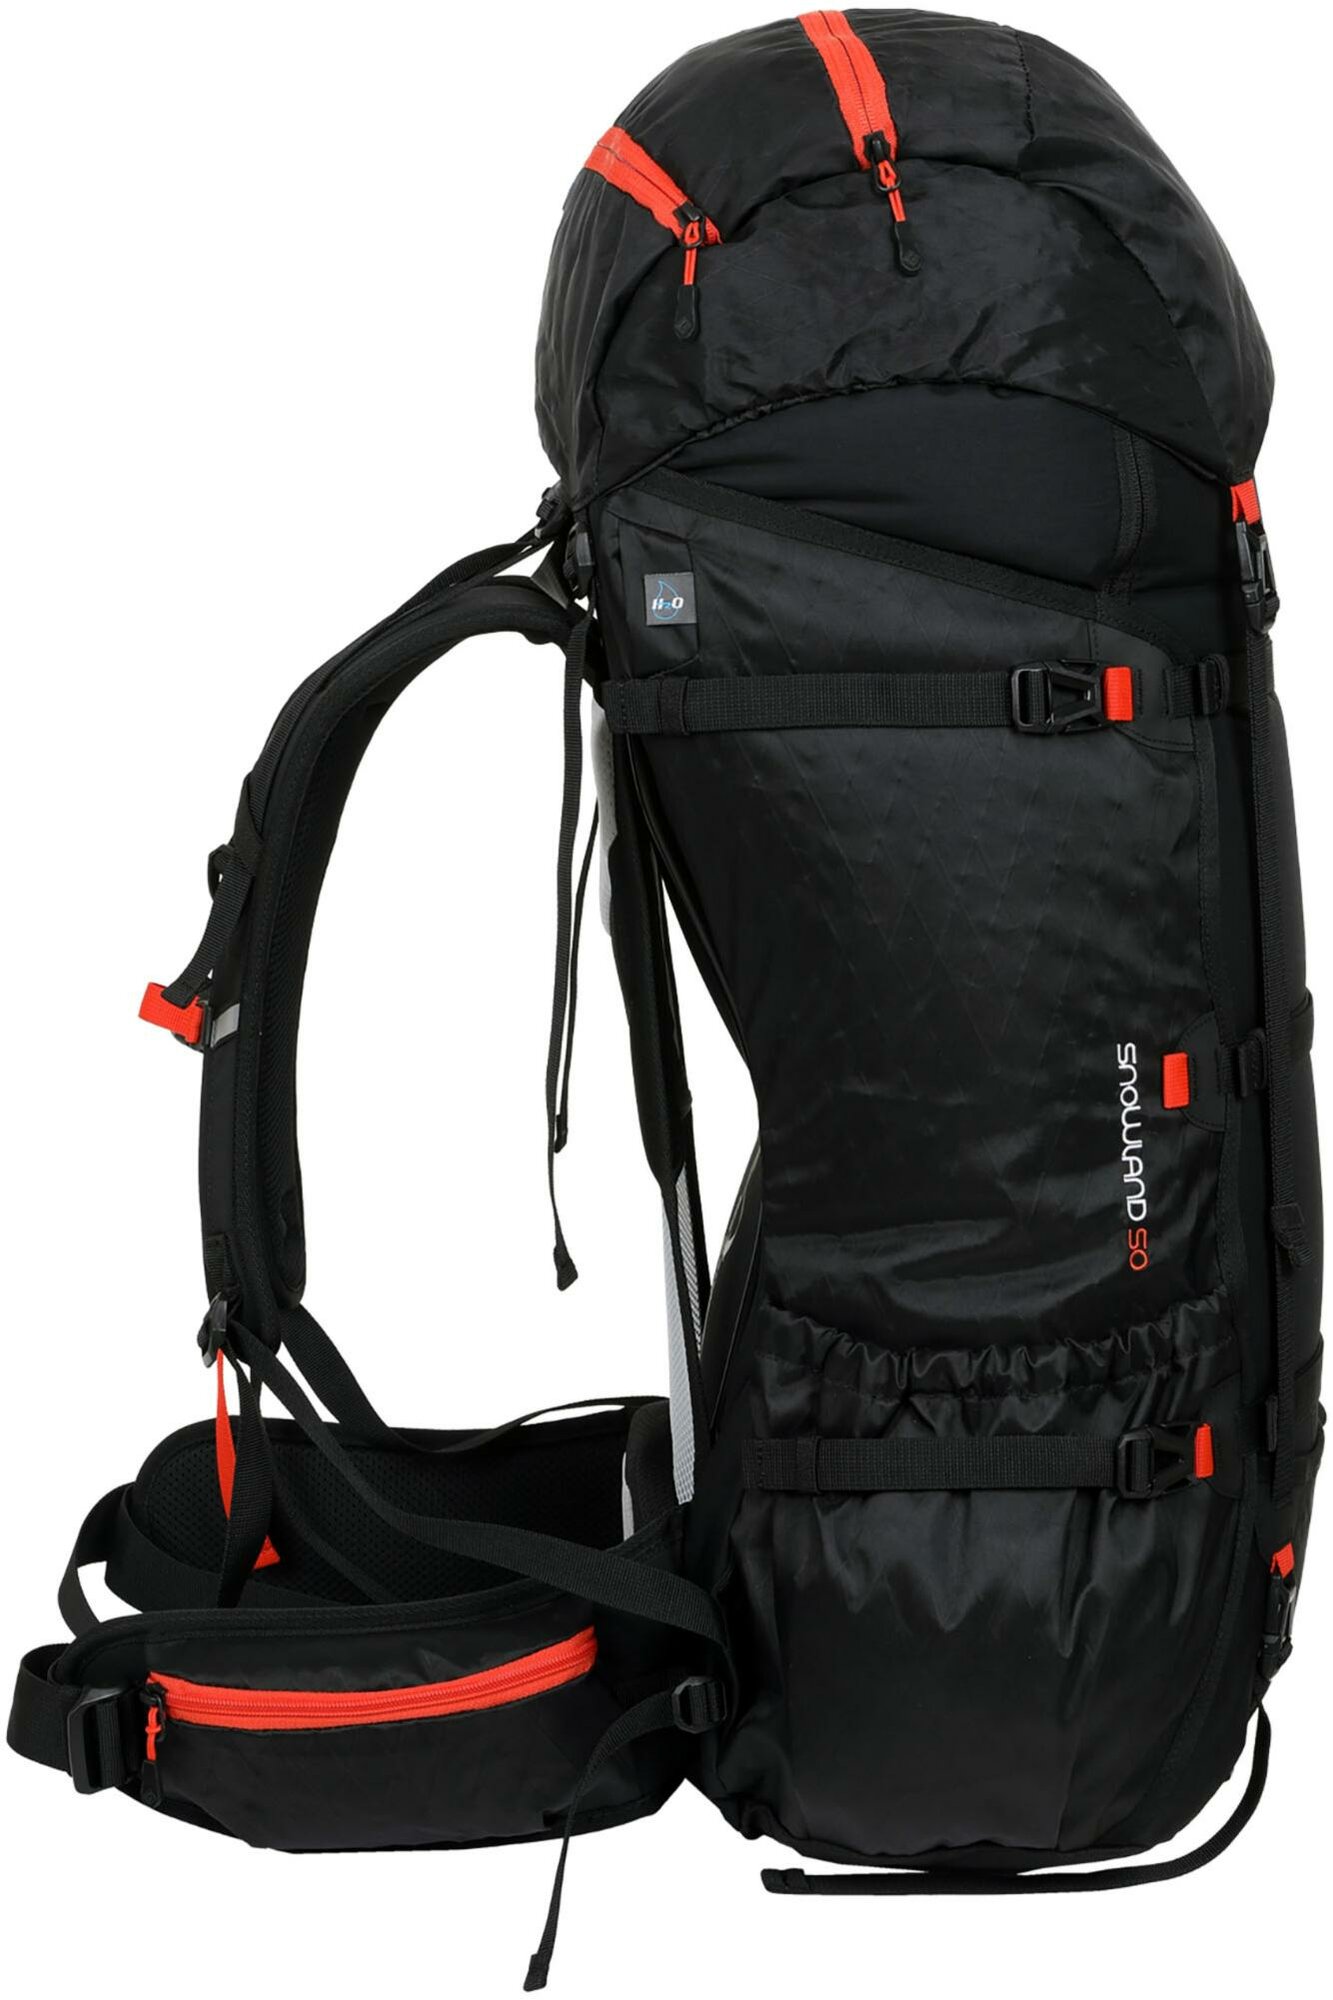 Рюкзак TOREAD Snowy ultralight 50L Backpack, black